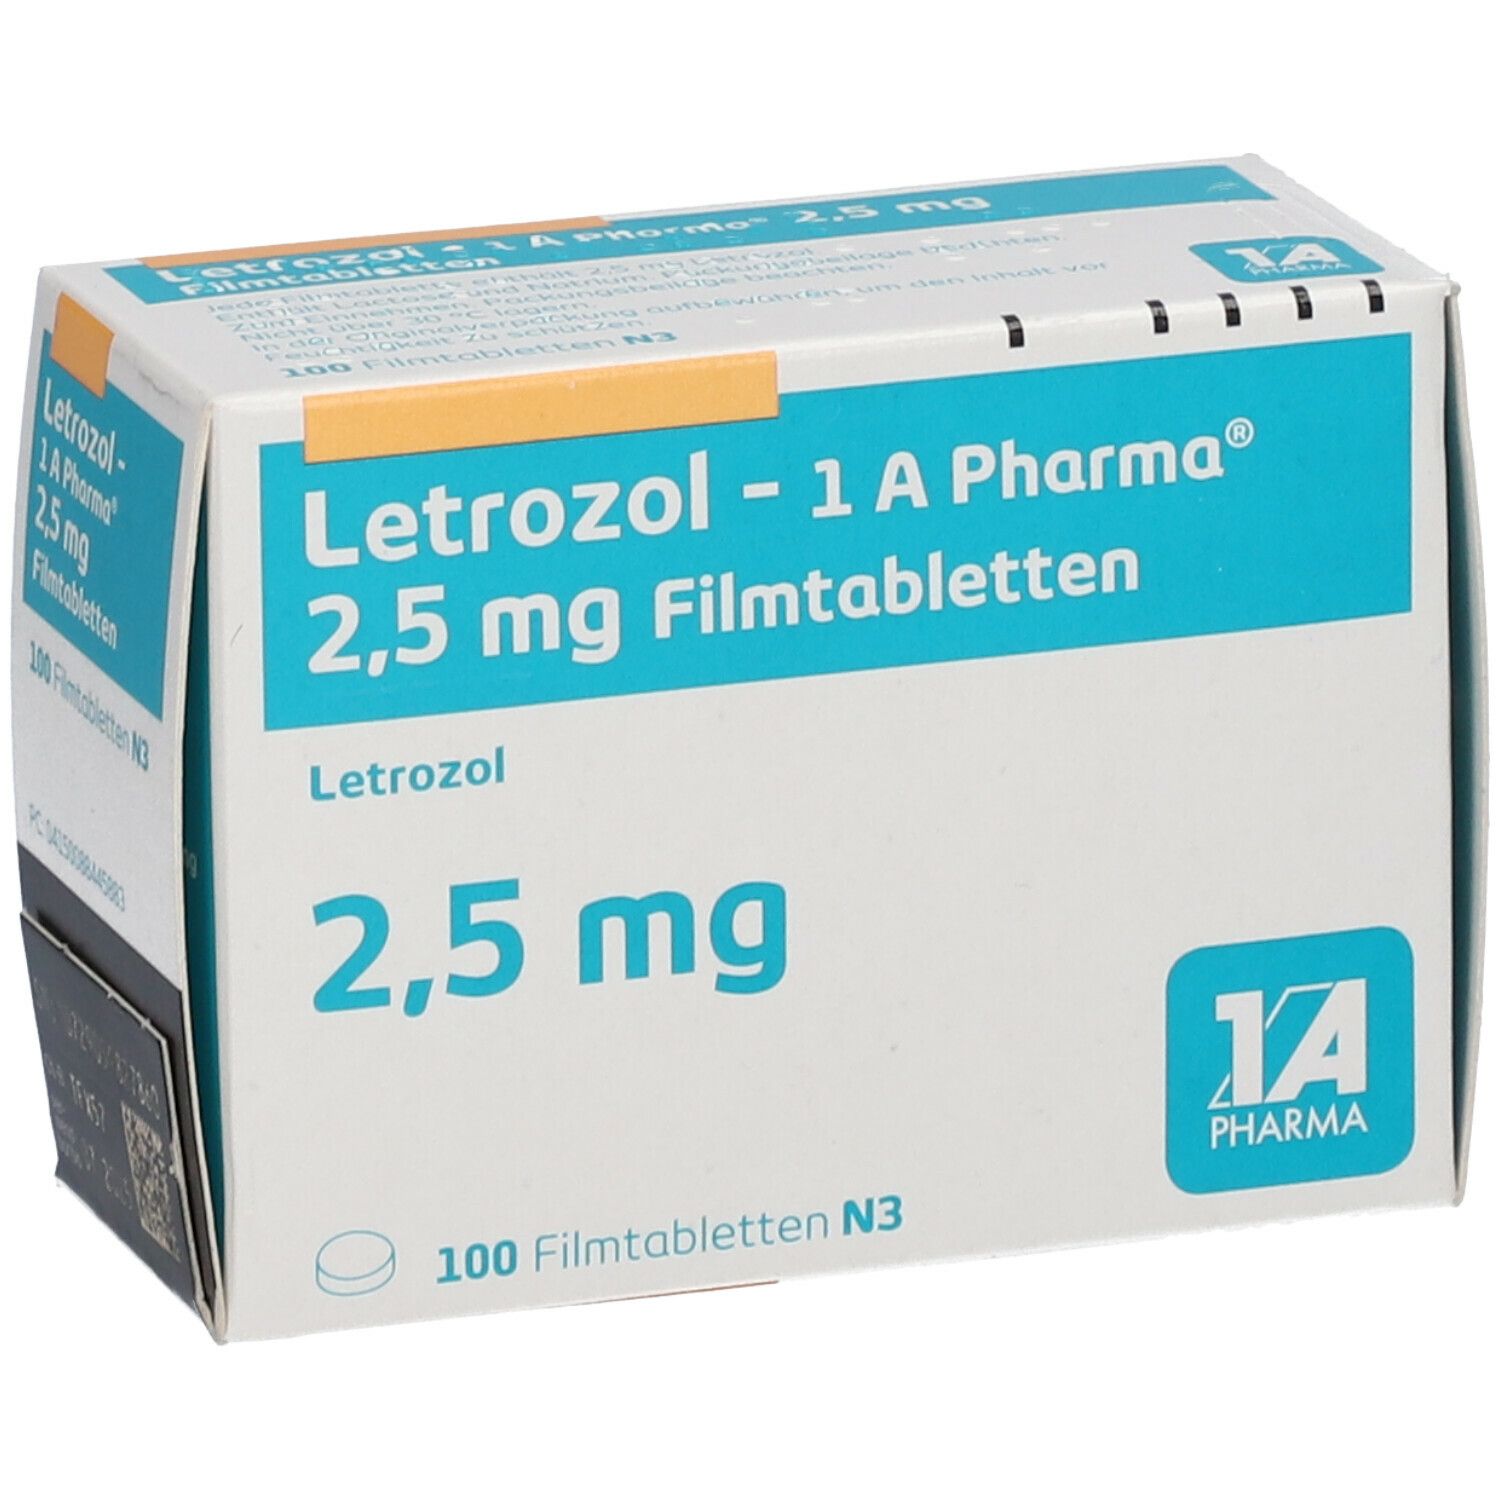 Pharma Dro Е 200 mg Pharmacom Labs (Fläschchen): Was für ein Fehler!